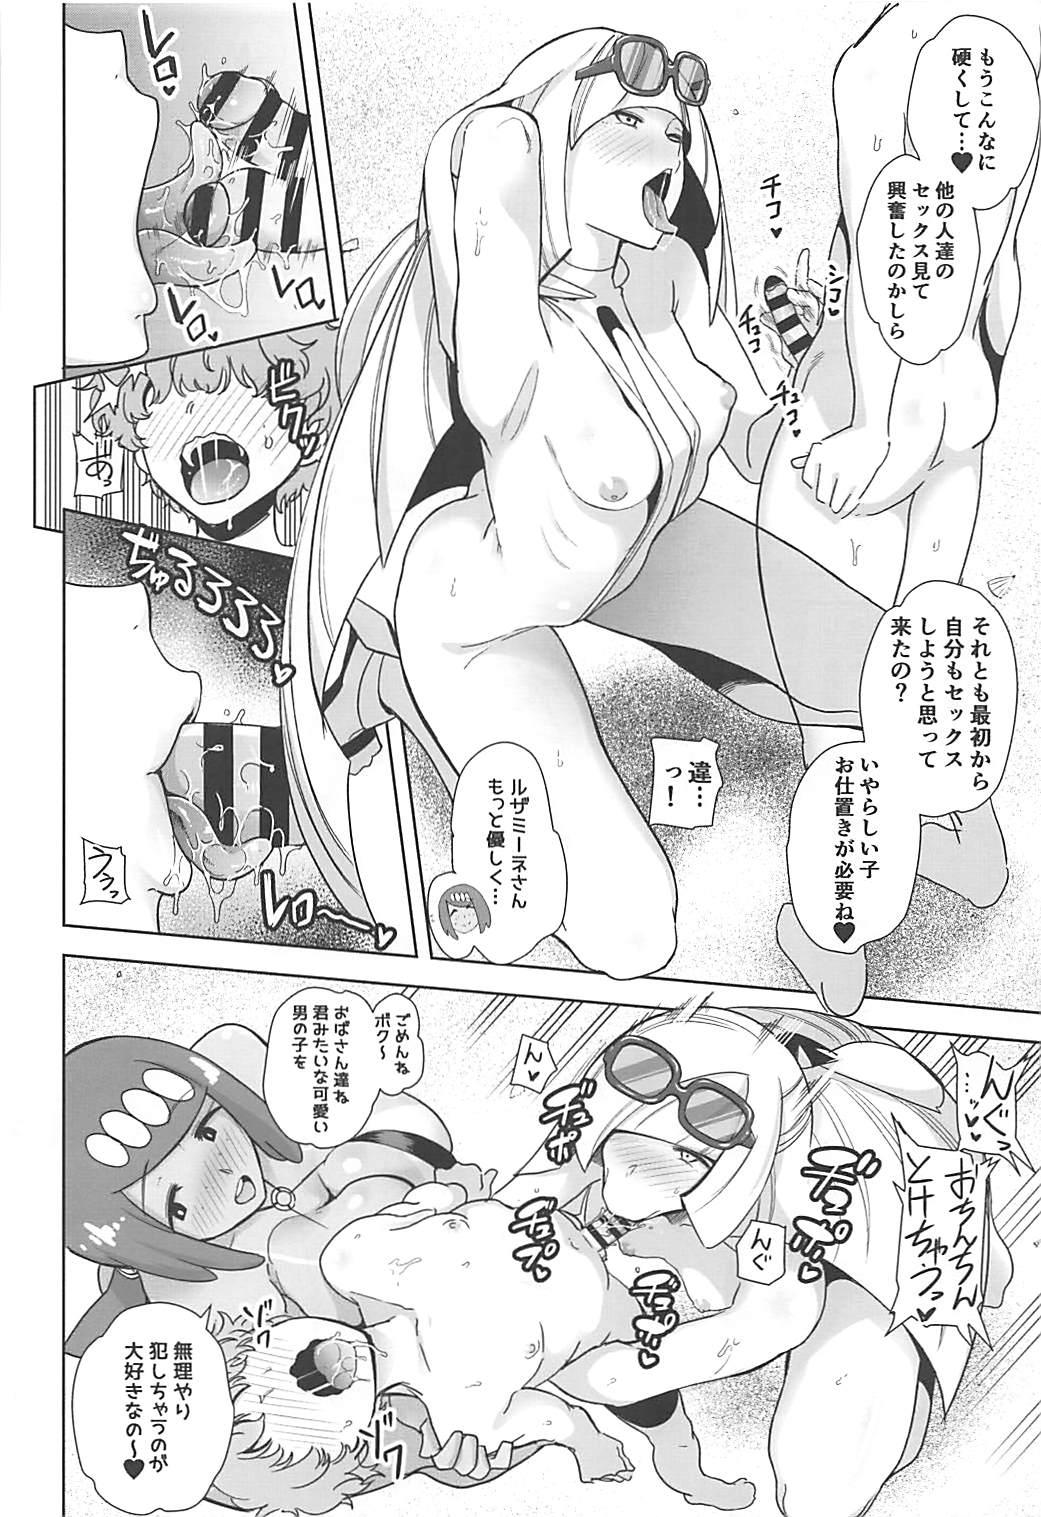 Ftvgirls Alola no Yoru no Sugata 3 - Pokemon Mouth - Page 5